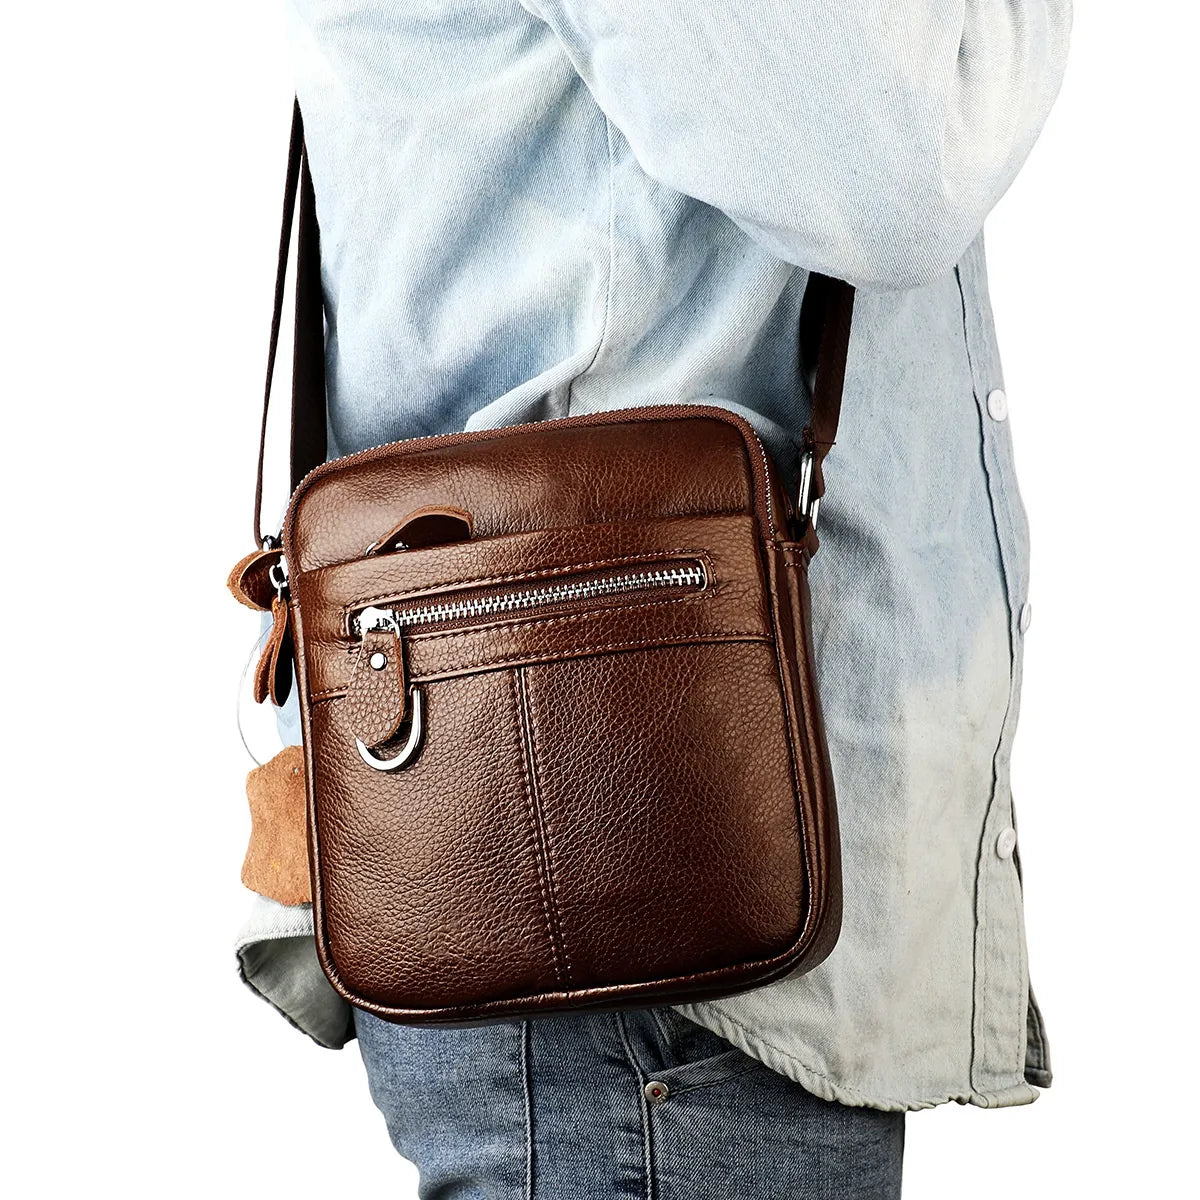 Men's Square-Shaped Messenger Bag: Crossbody Leather Shoulder Bag for Outdoor Adventures